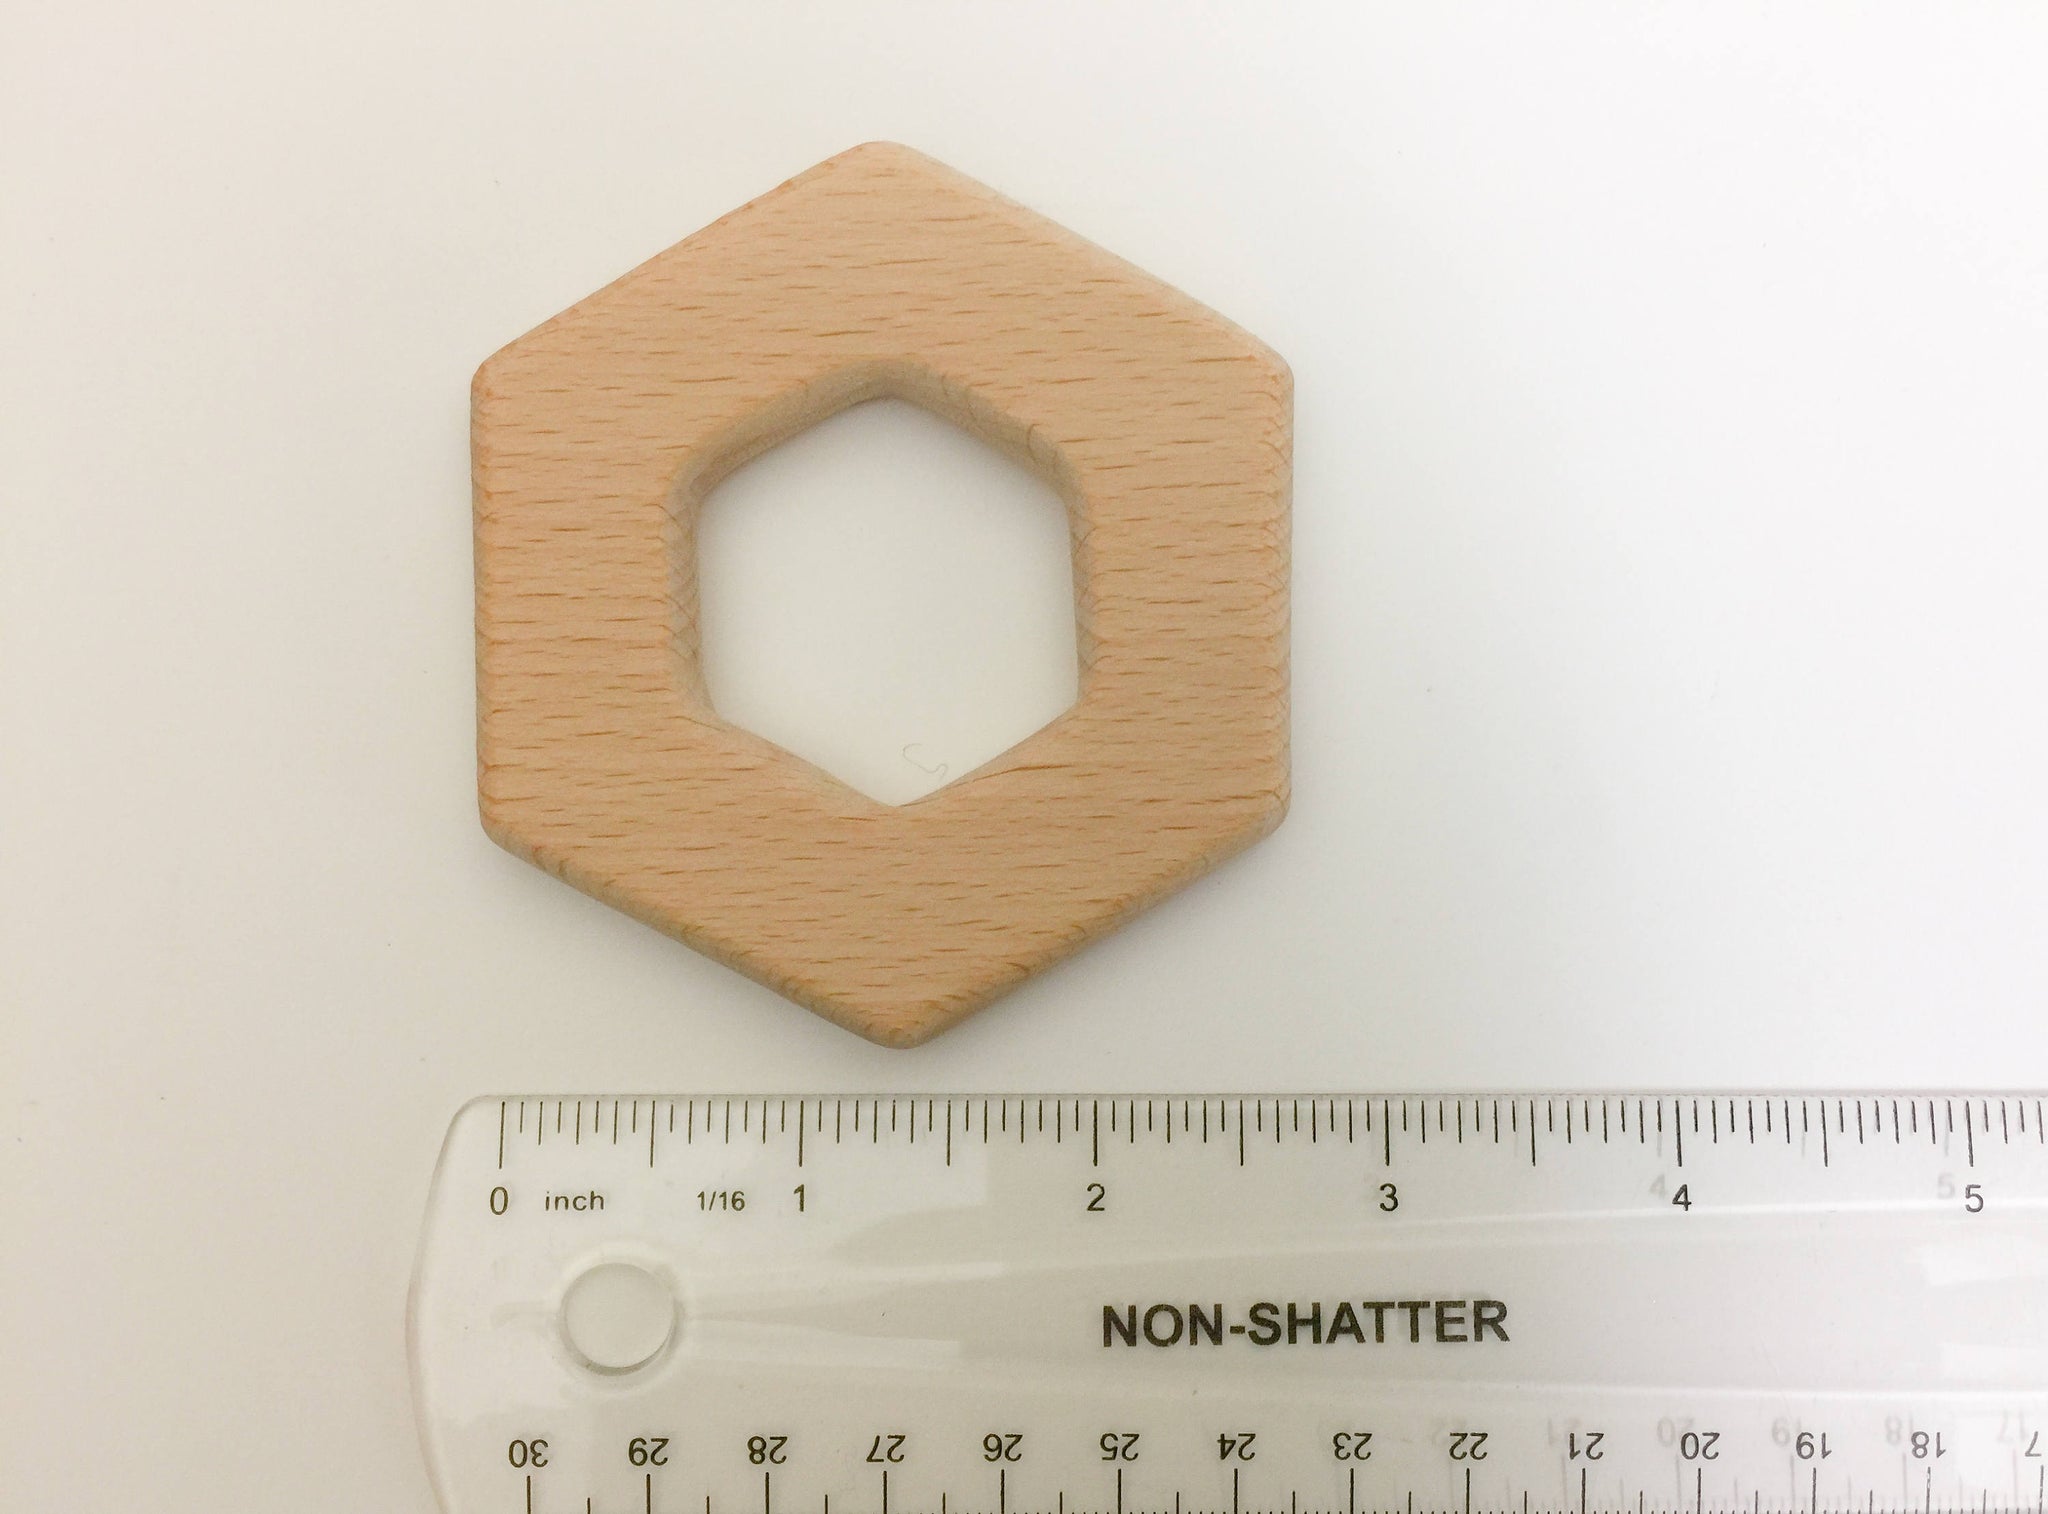 Wood Hexagon / Honey Comb Teether